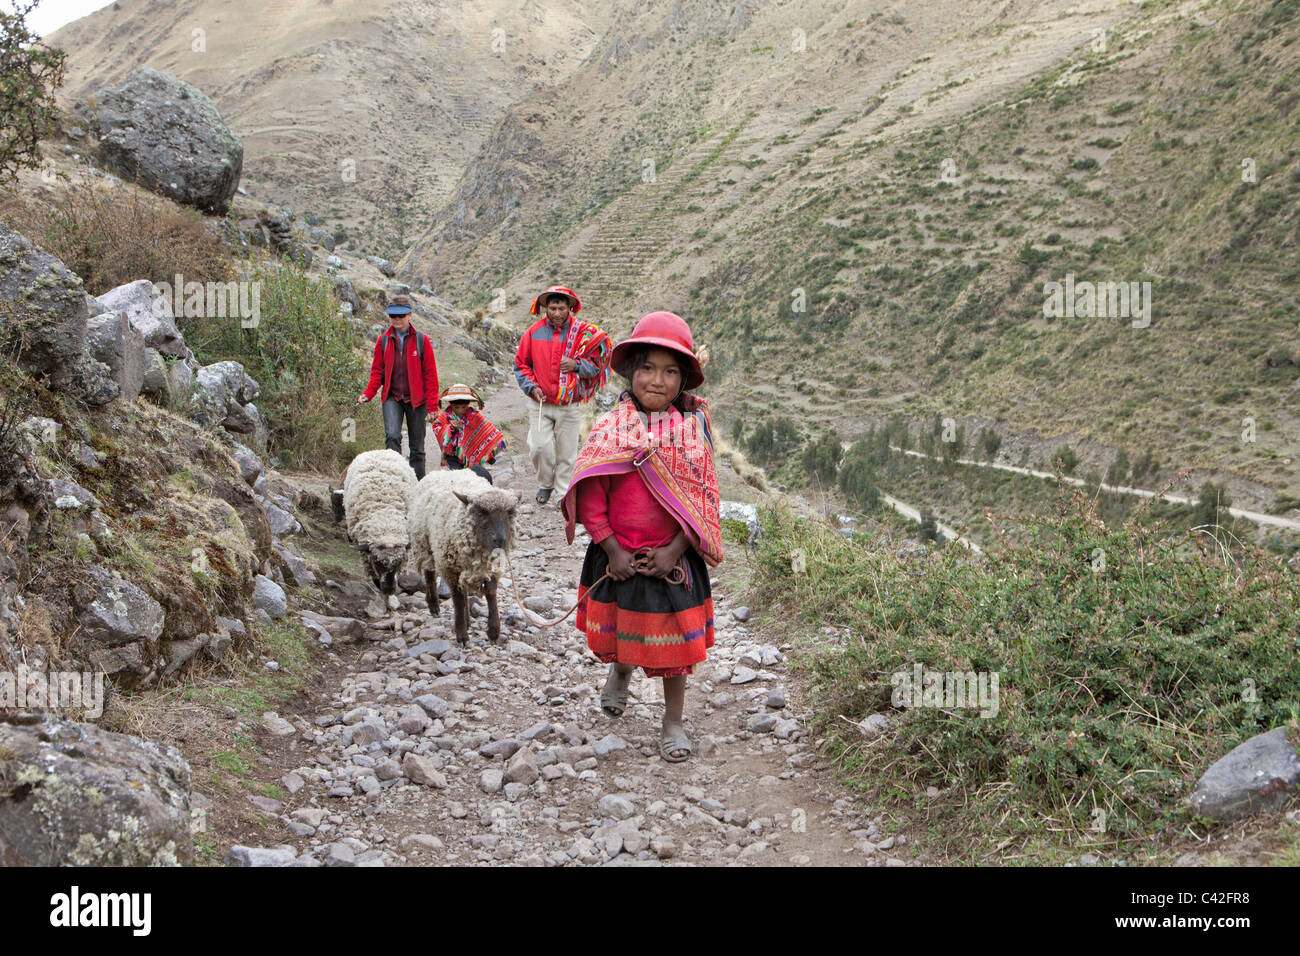 Dorf in der Nähe von Ollantaytambo. Indische Mädchen und jungen in Tracht zusammen mit Frau, Tourist, Schafe hüten. Stockfoto